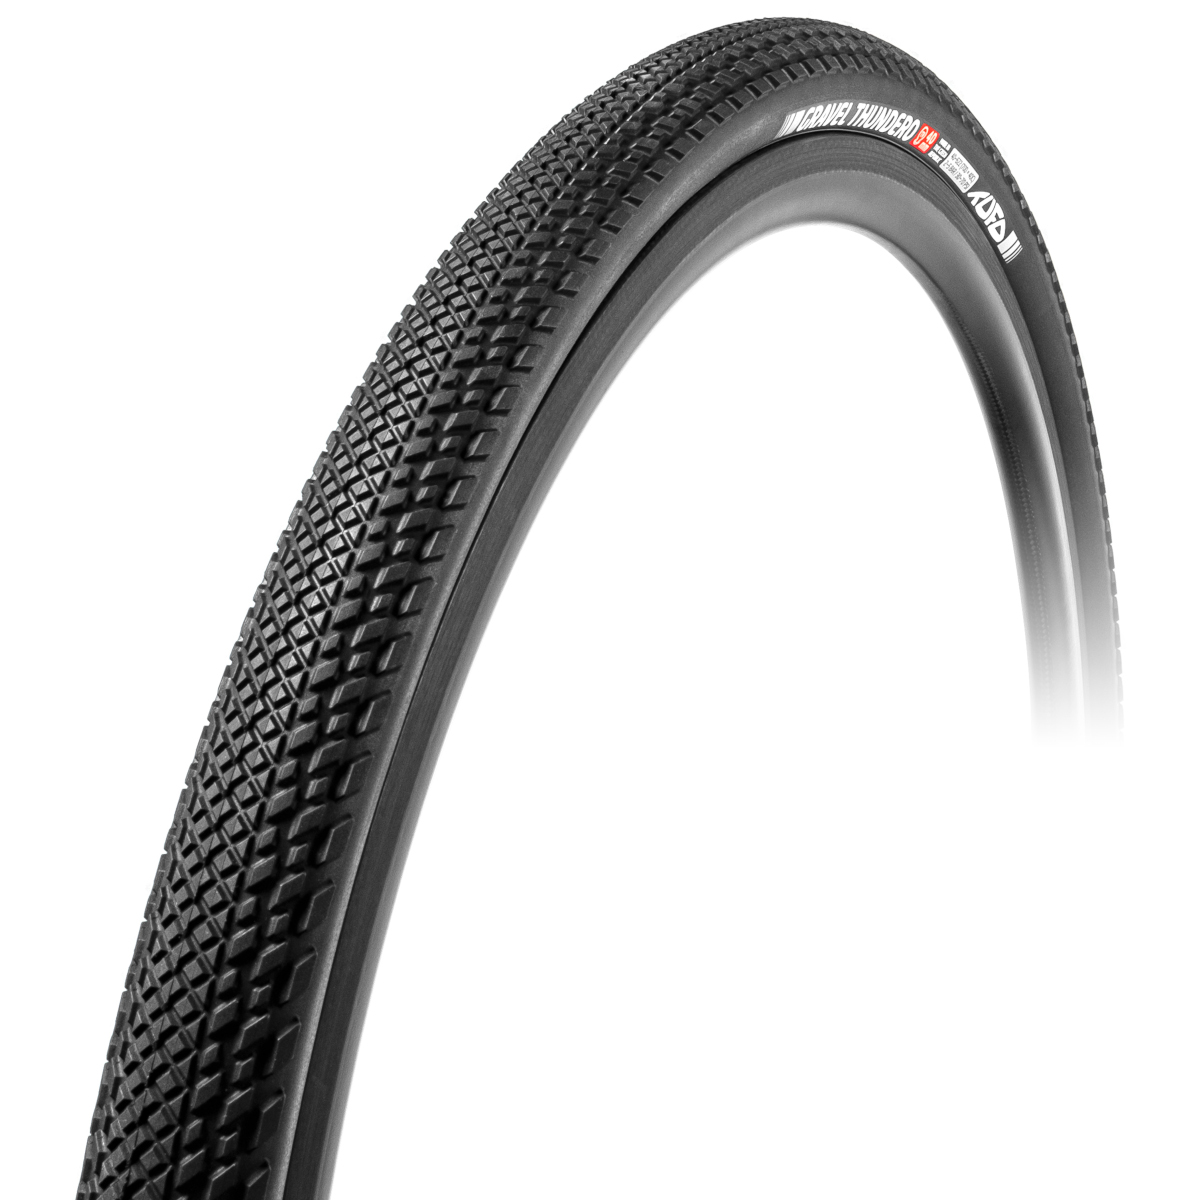 Productfoto van Tufo Gravel Thundero Folding Tire - 44-622 - black